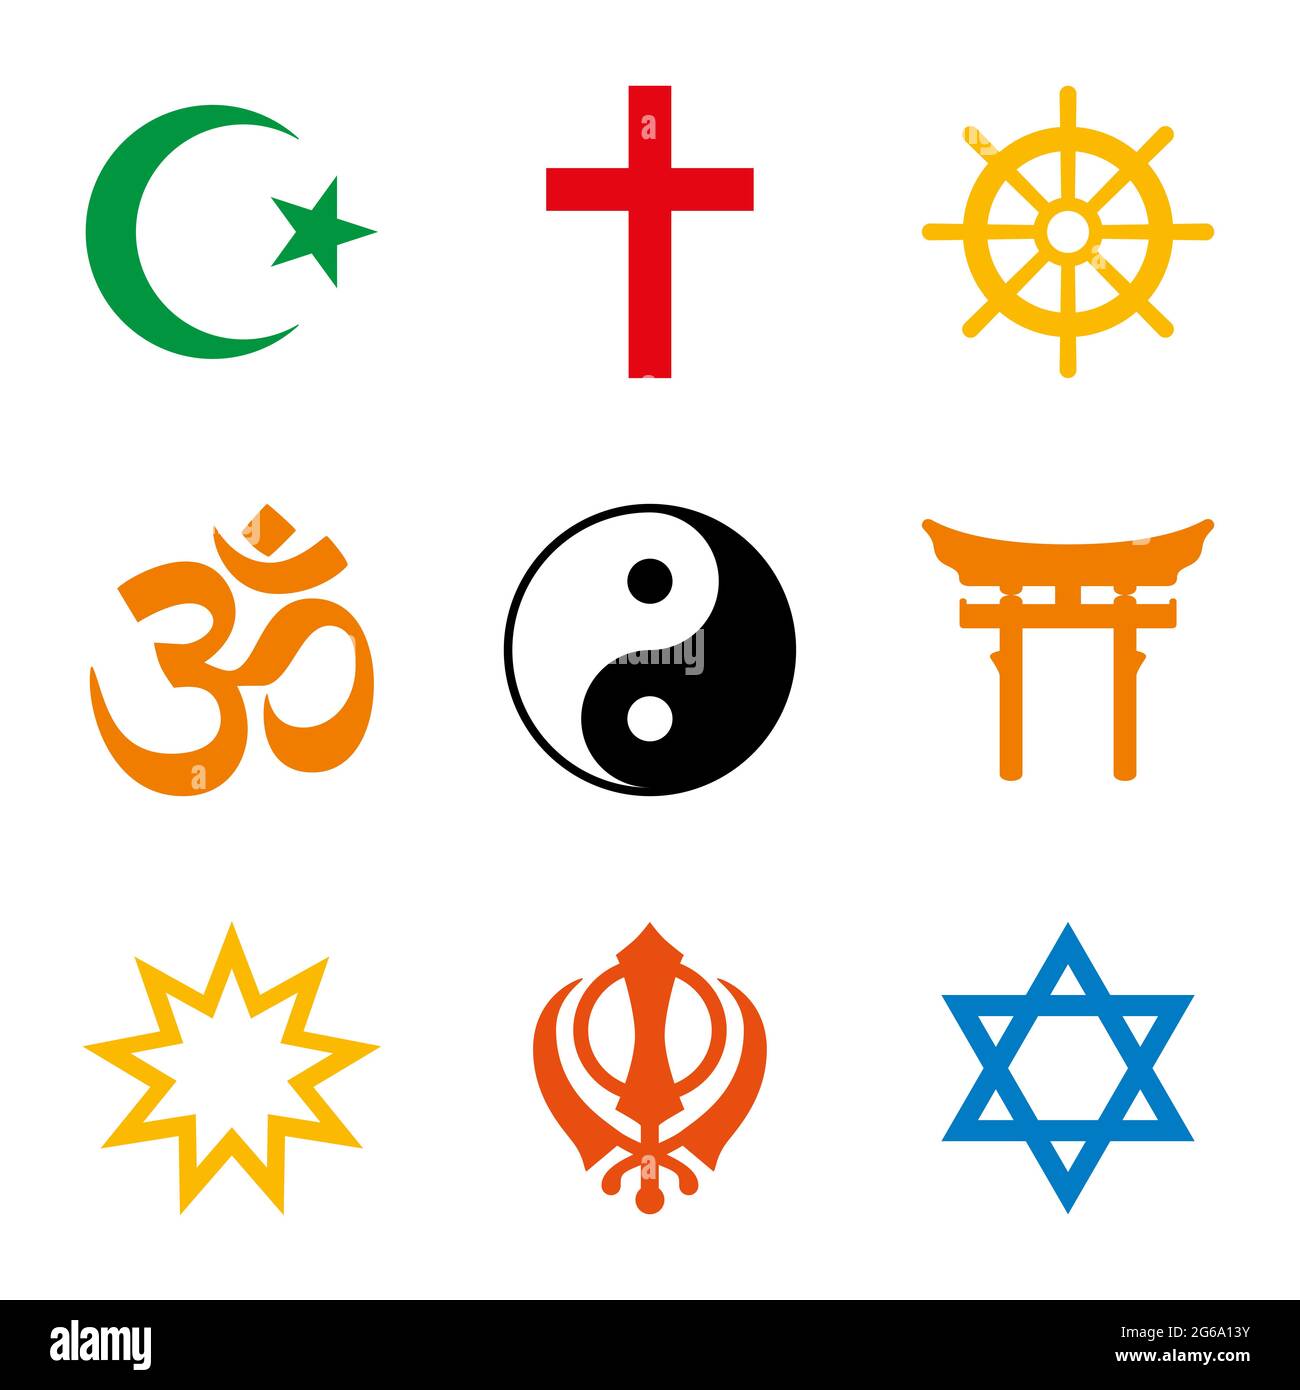 Religioni del mondo, nove simboli colorati dei principali gruppi religiosi e religioni. Islam, Cristianesimo, Buddismo, Induismo, Taoismo, Shinto, fede Bahai. Foto Stock